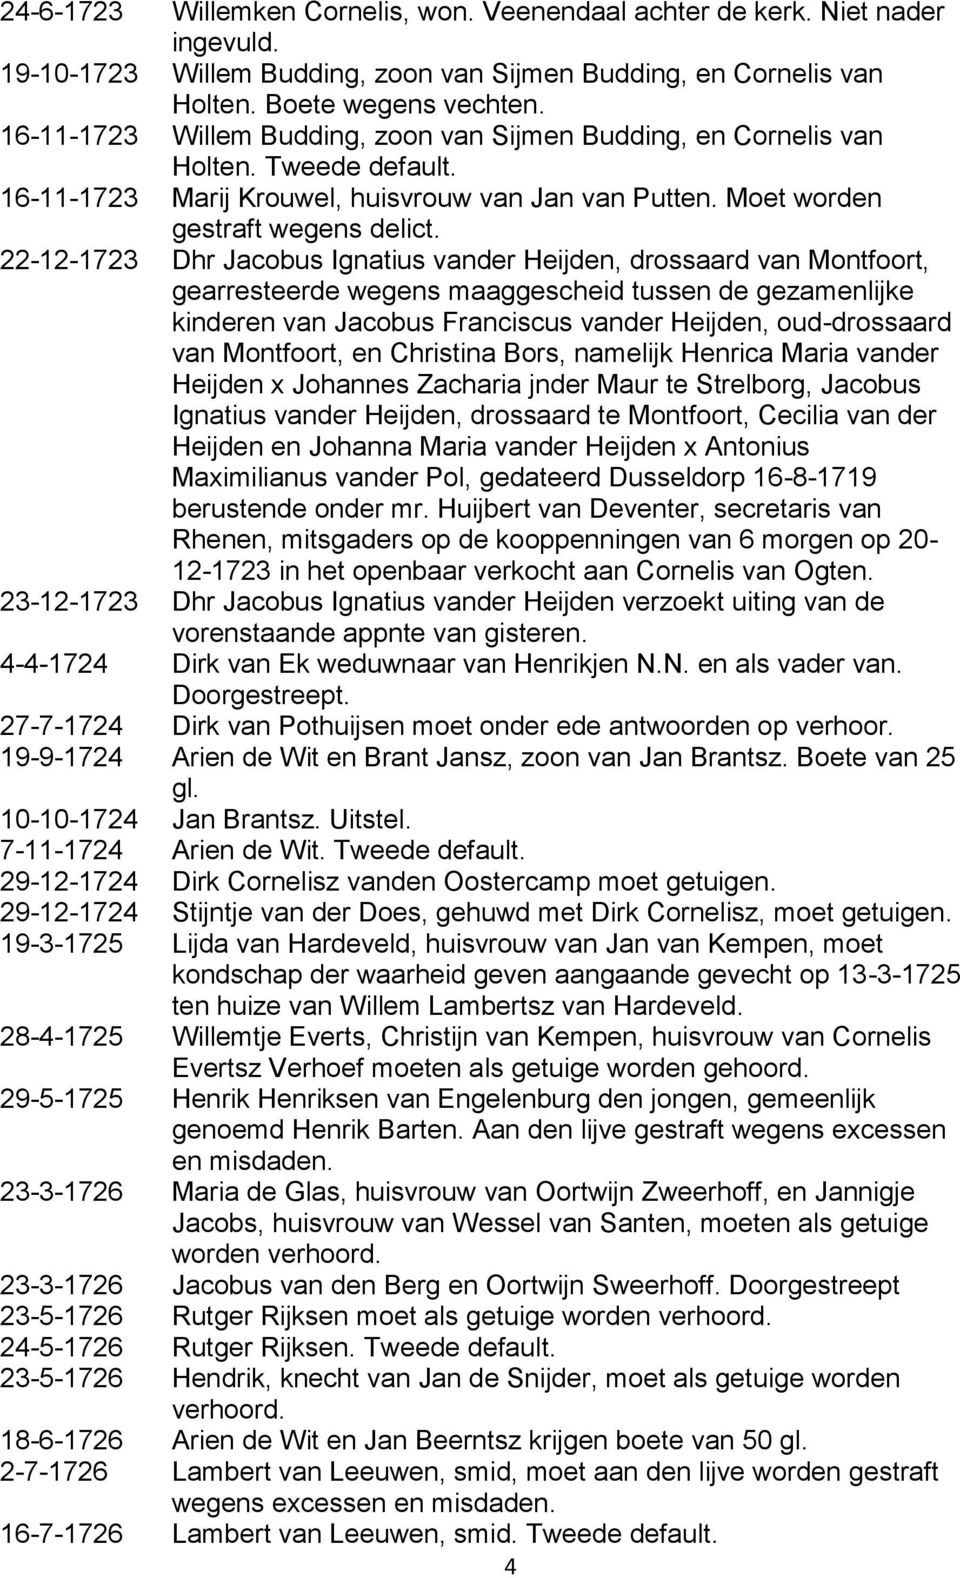 22-12-1723 Dhr Jacobus Ignatius vander Heijden, drossaard van Montfoort, gearresteerde wegens maaggescheid tussen de gezamenlijke kinderen van Jacobus Franciscus vander Heijden, oud-drossaard van